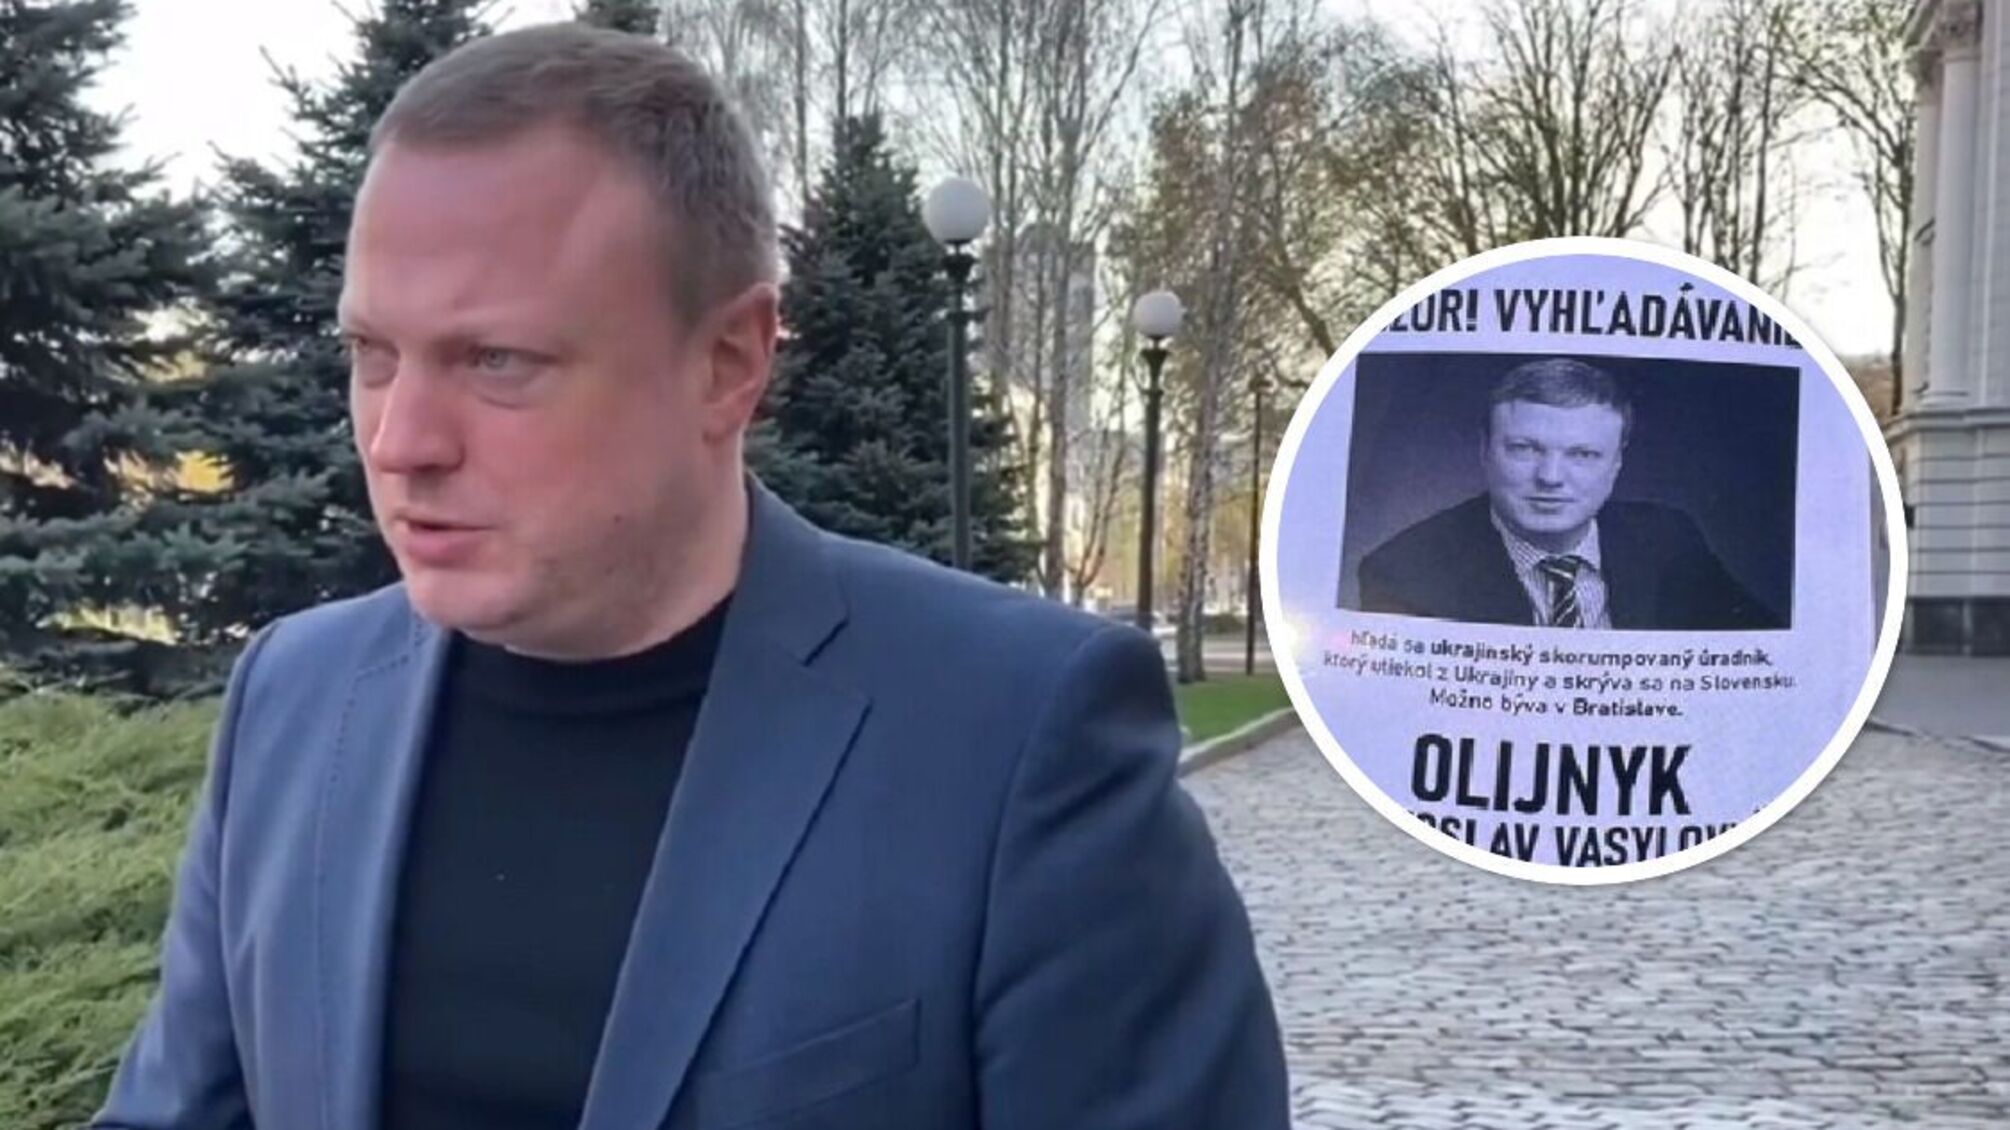 Пророссийского экс-заместителя главы Днепропетровской ОГА Олейника, вероятно, разыскивают в Словакии: что известно